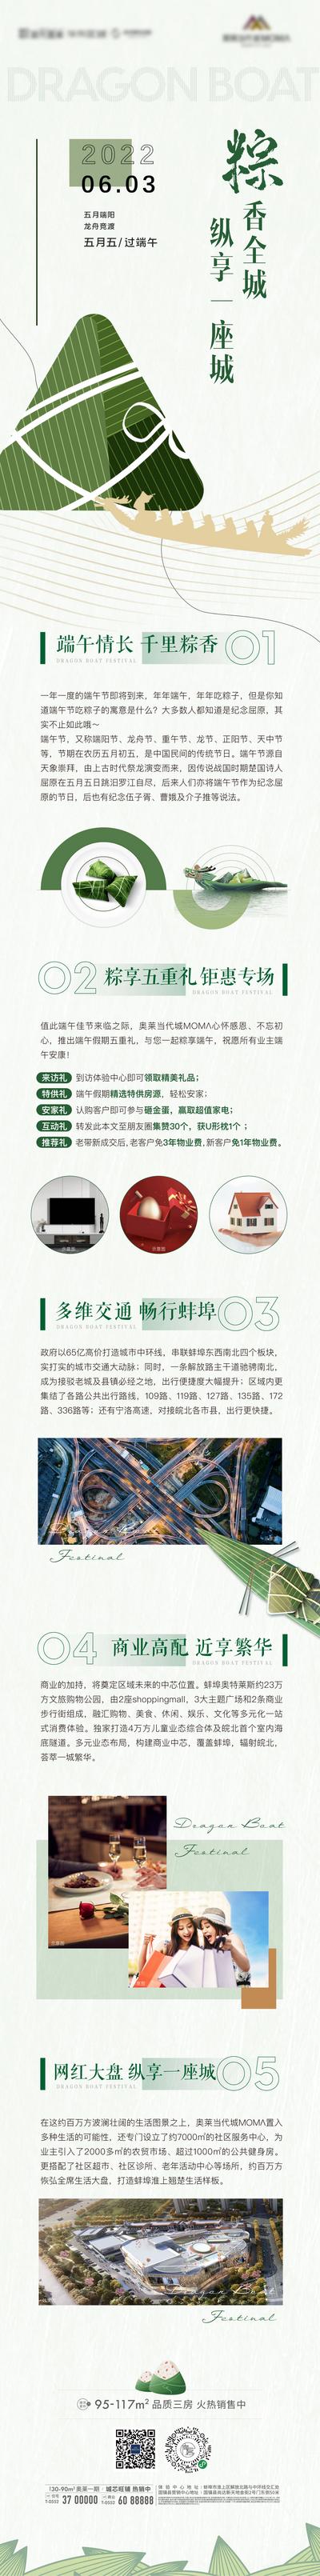 南门网 专题设计 长图 地产 中国传统节日 端午节 粽子 龙舟 价值点 交通